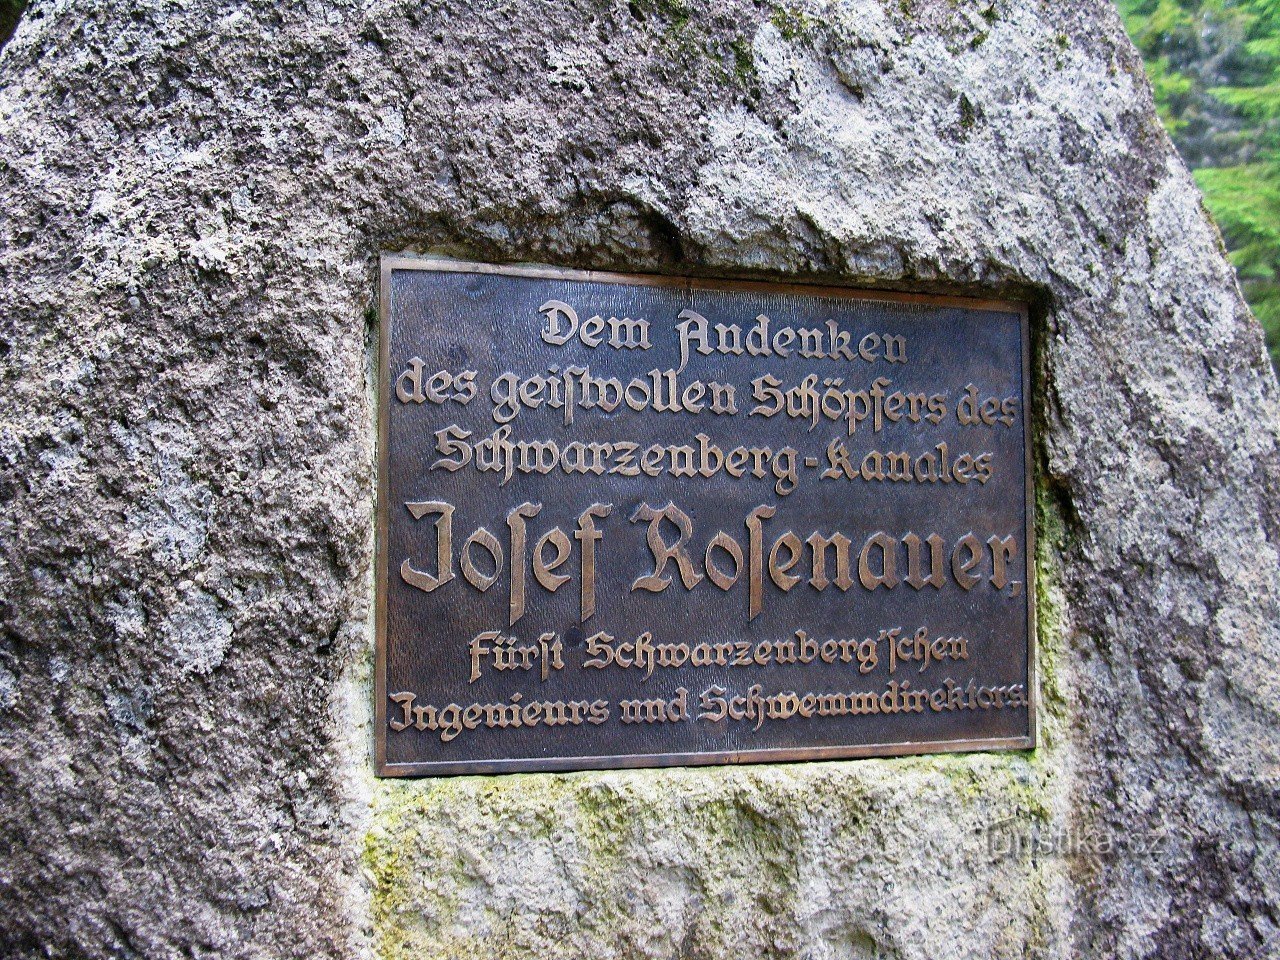 A inscrição no monumento é em alemão